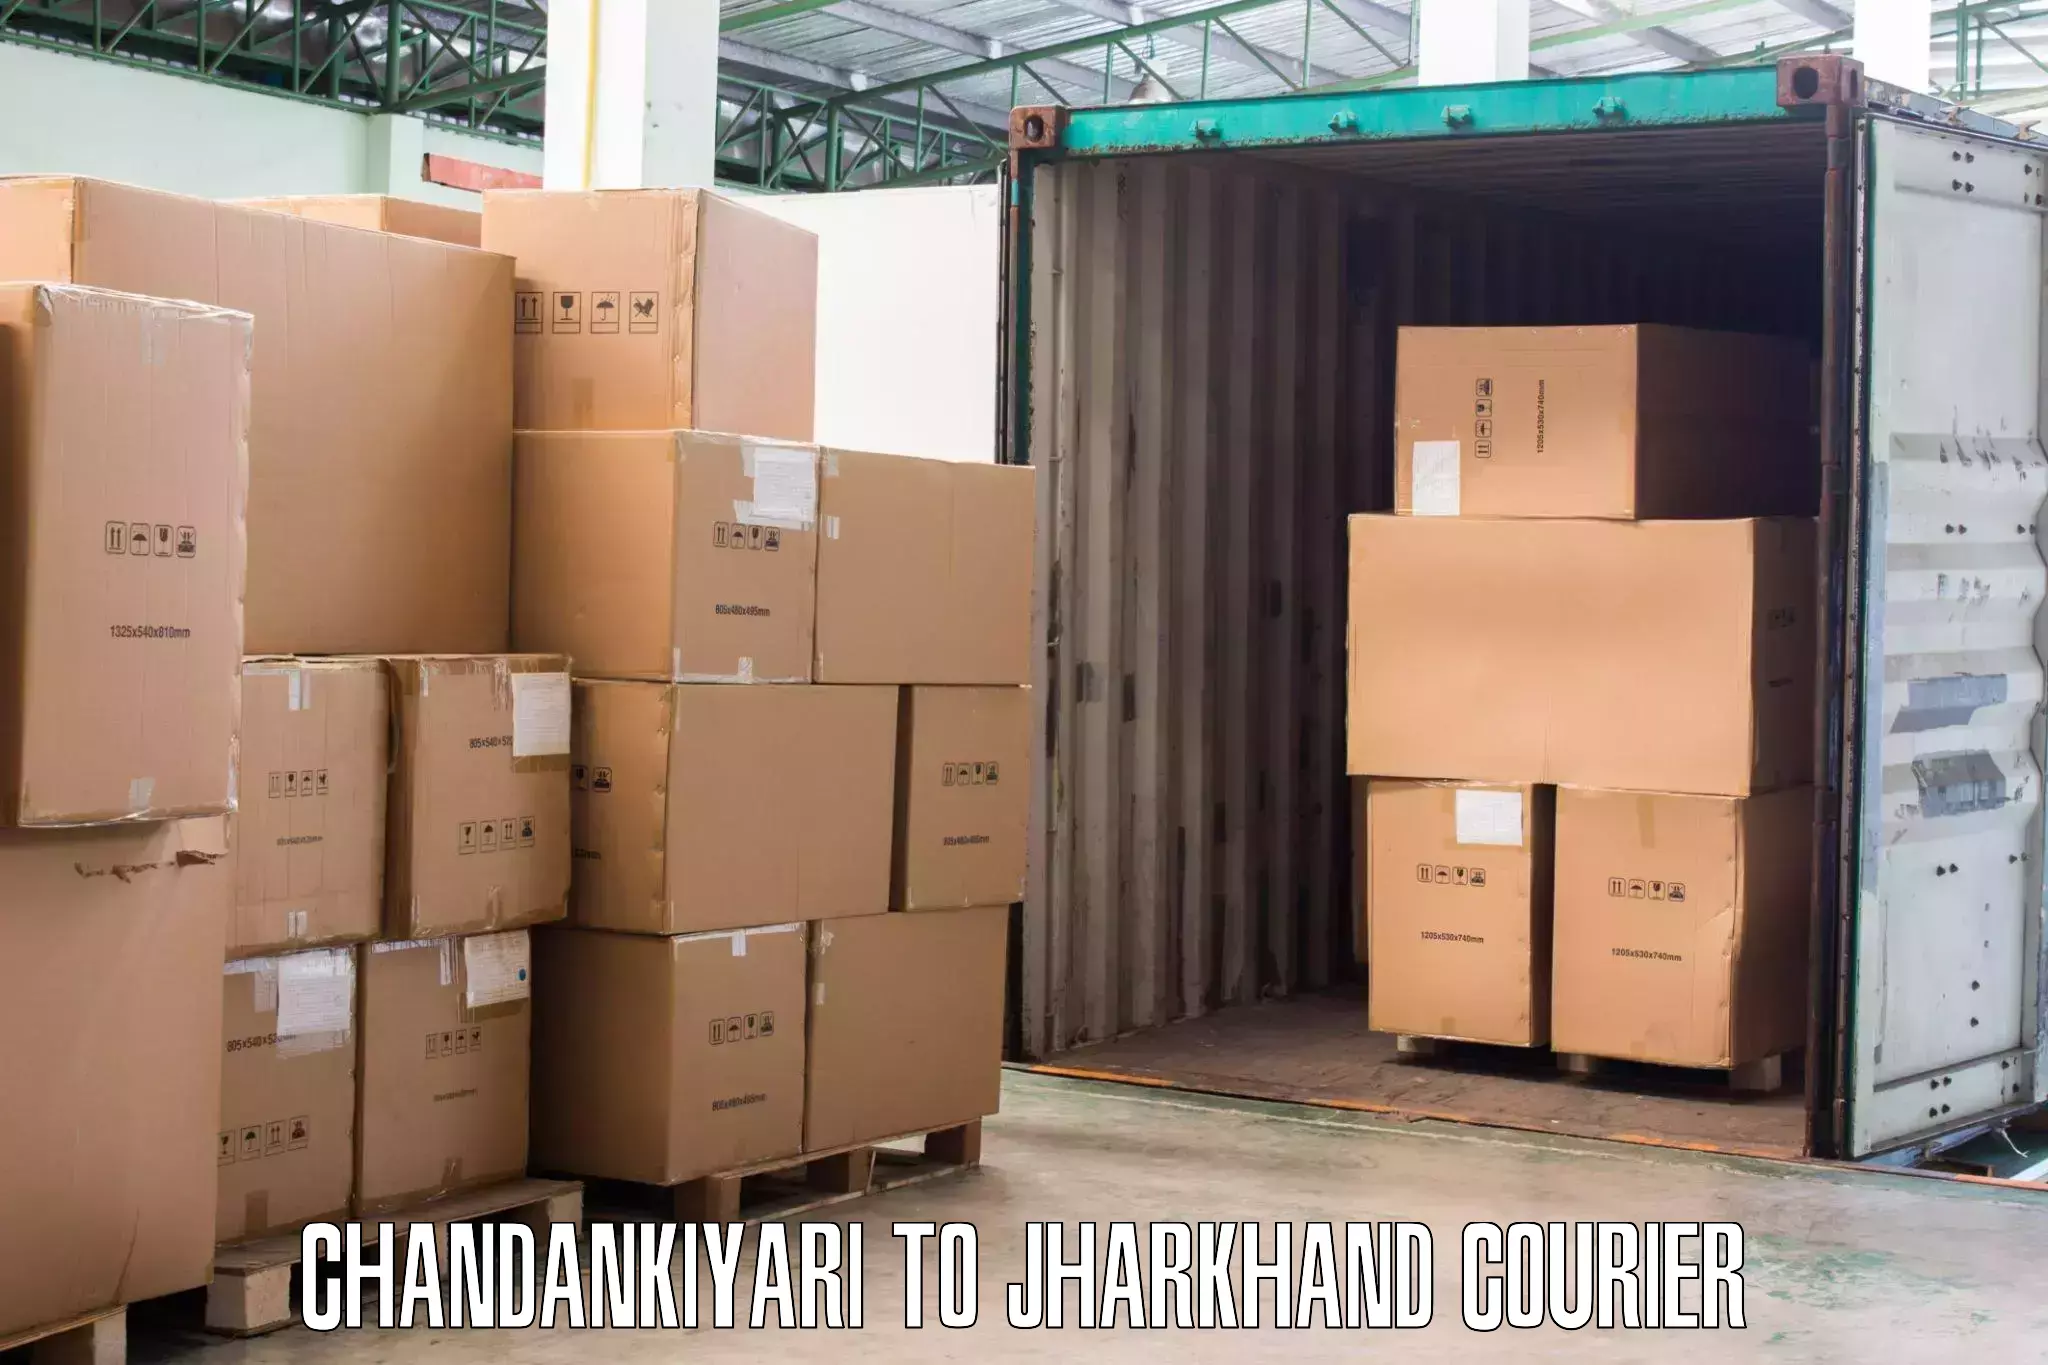 Efficient furniture transport Chandankiyari to Peterbar